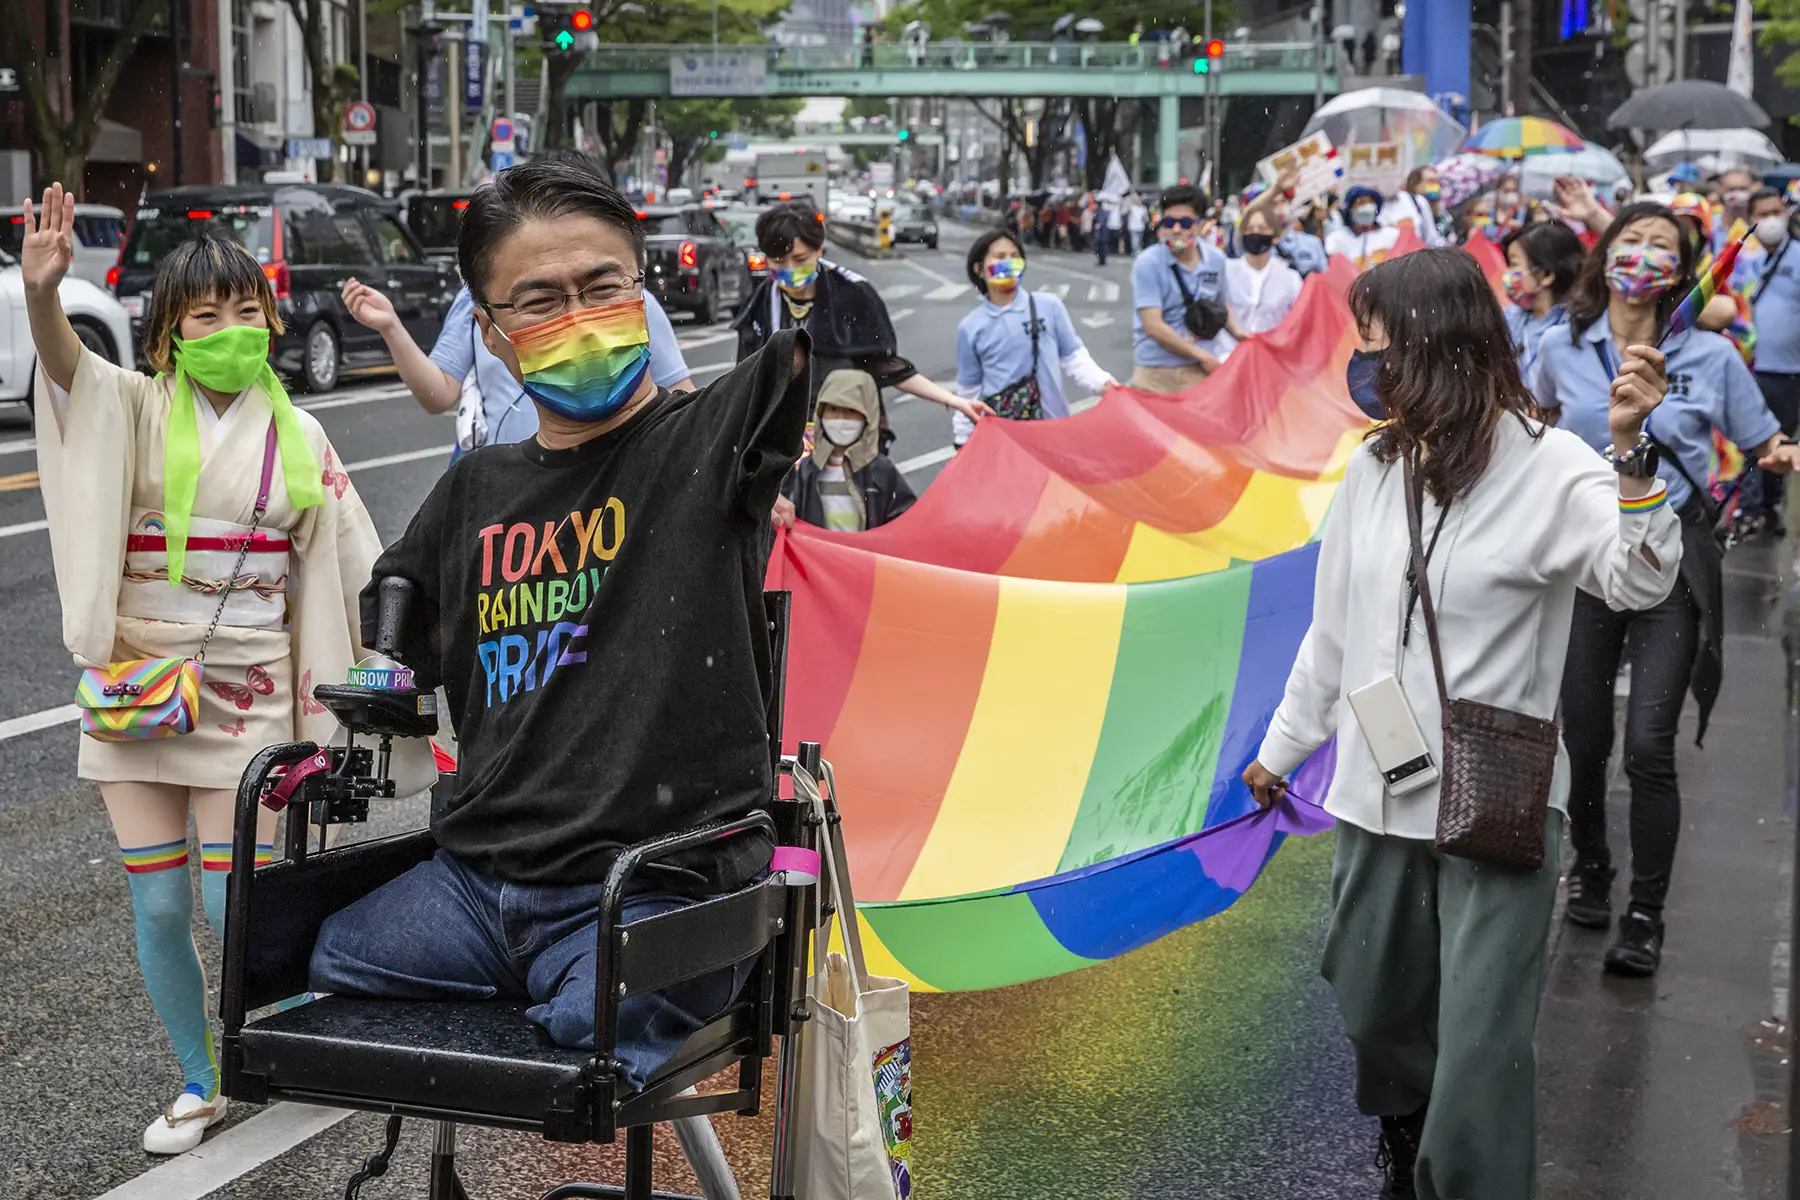 Tokyo Rainbow Pride 2022 Parade